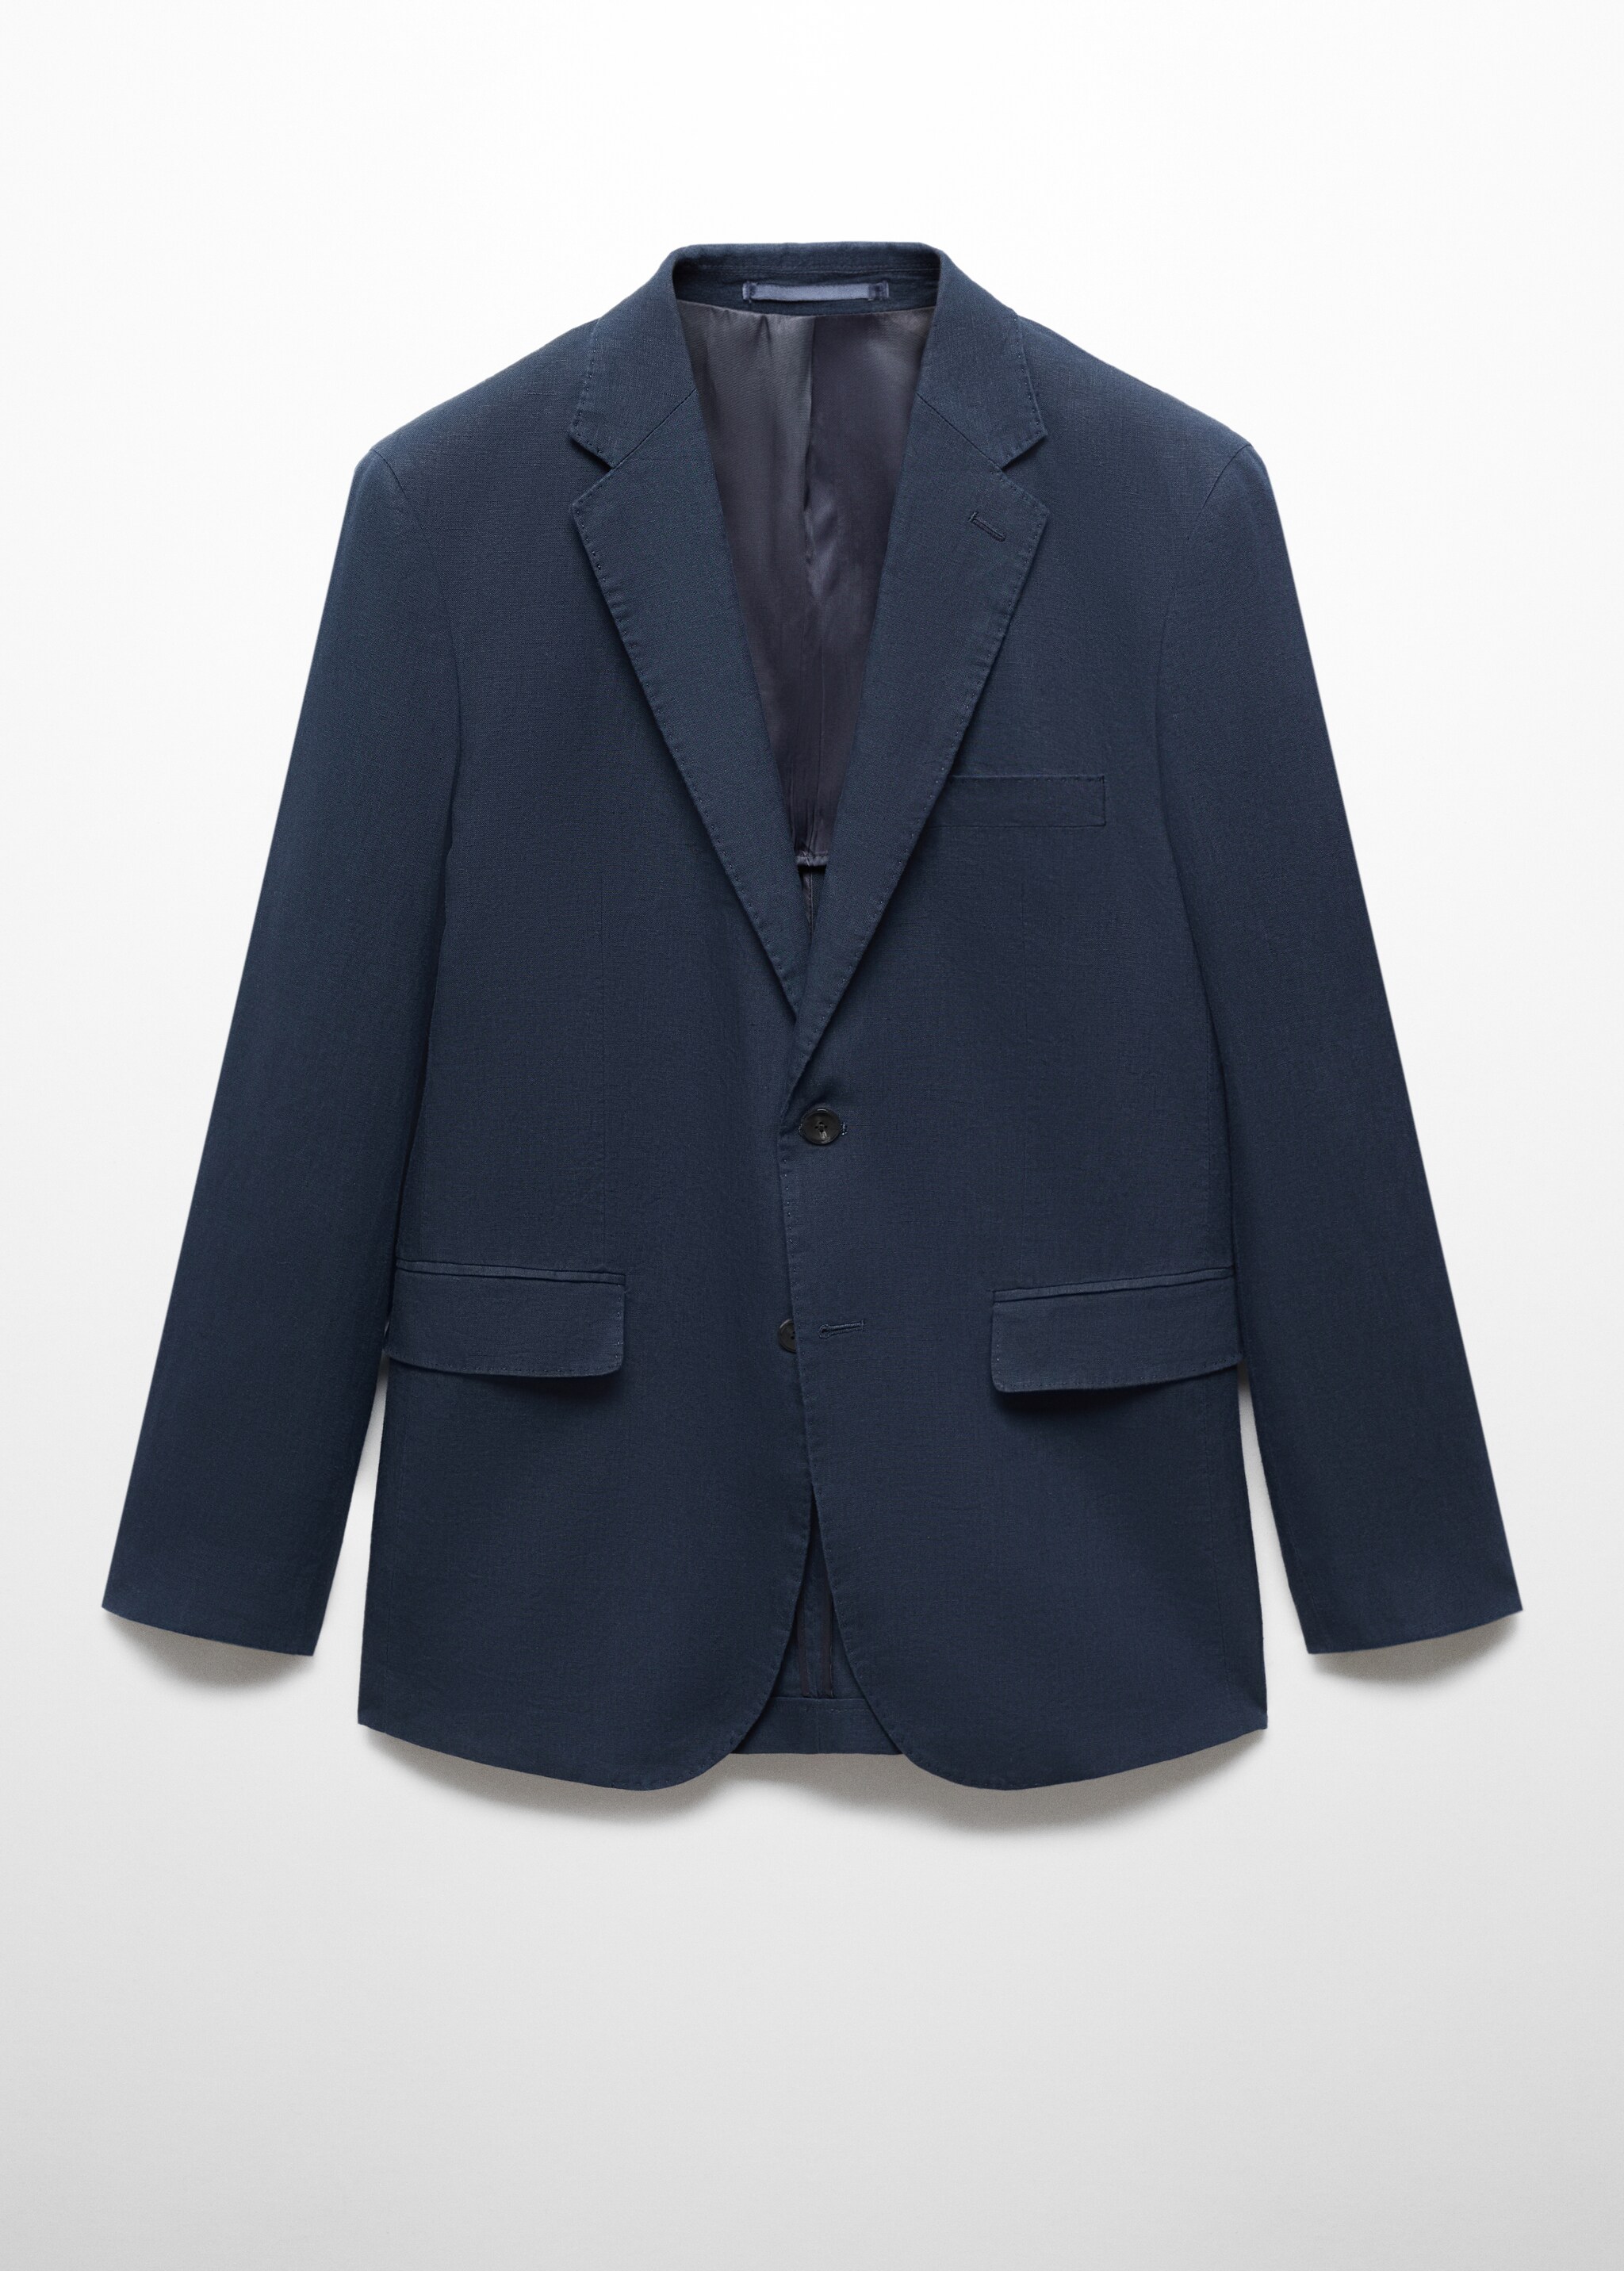 100% linen slim-fit suit blazer - Article without model